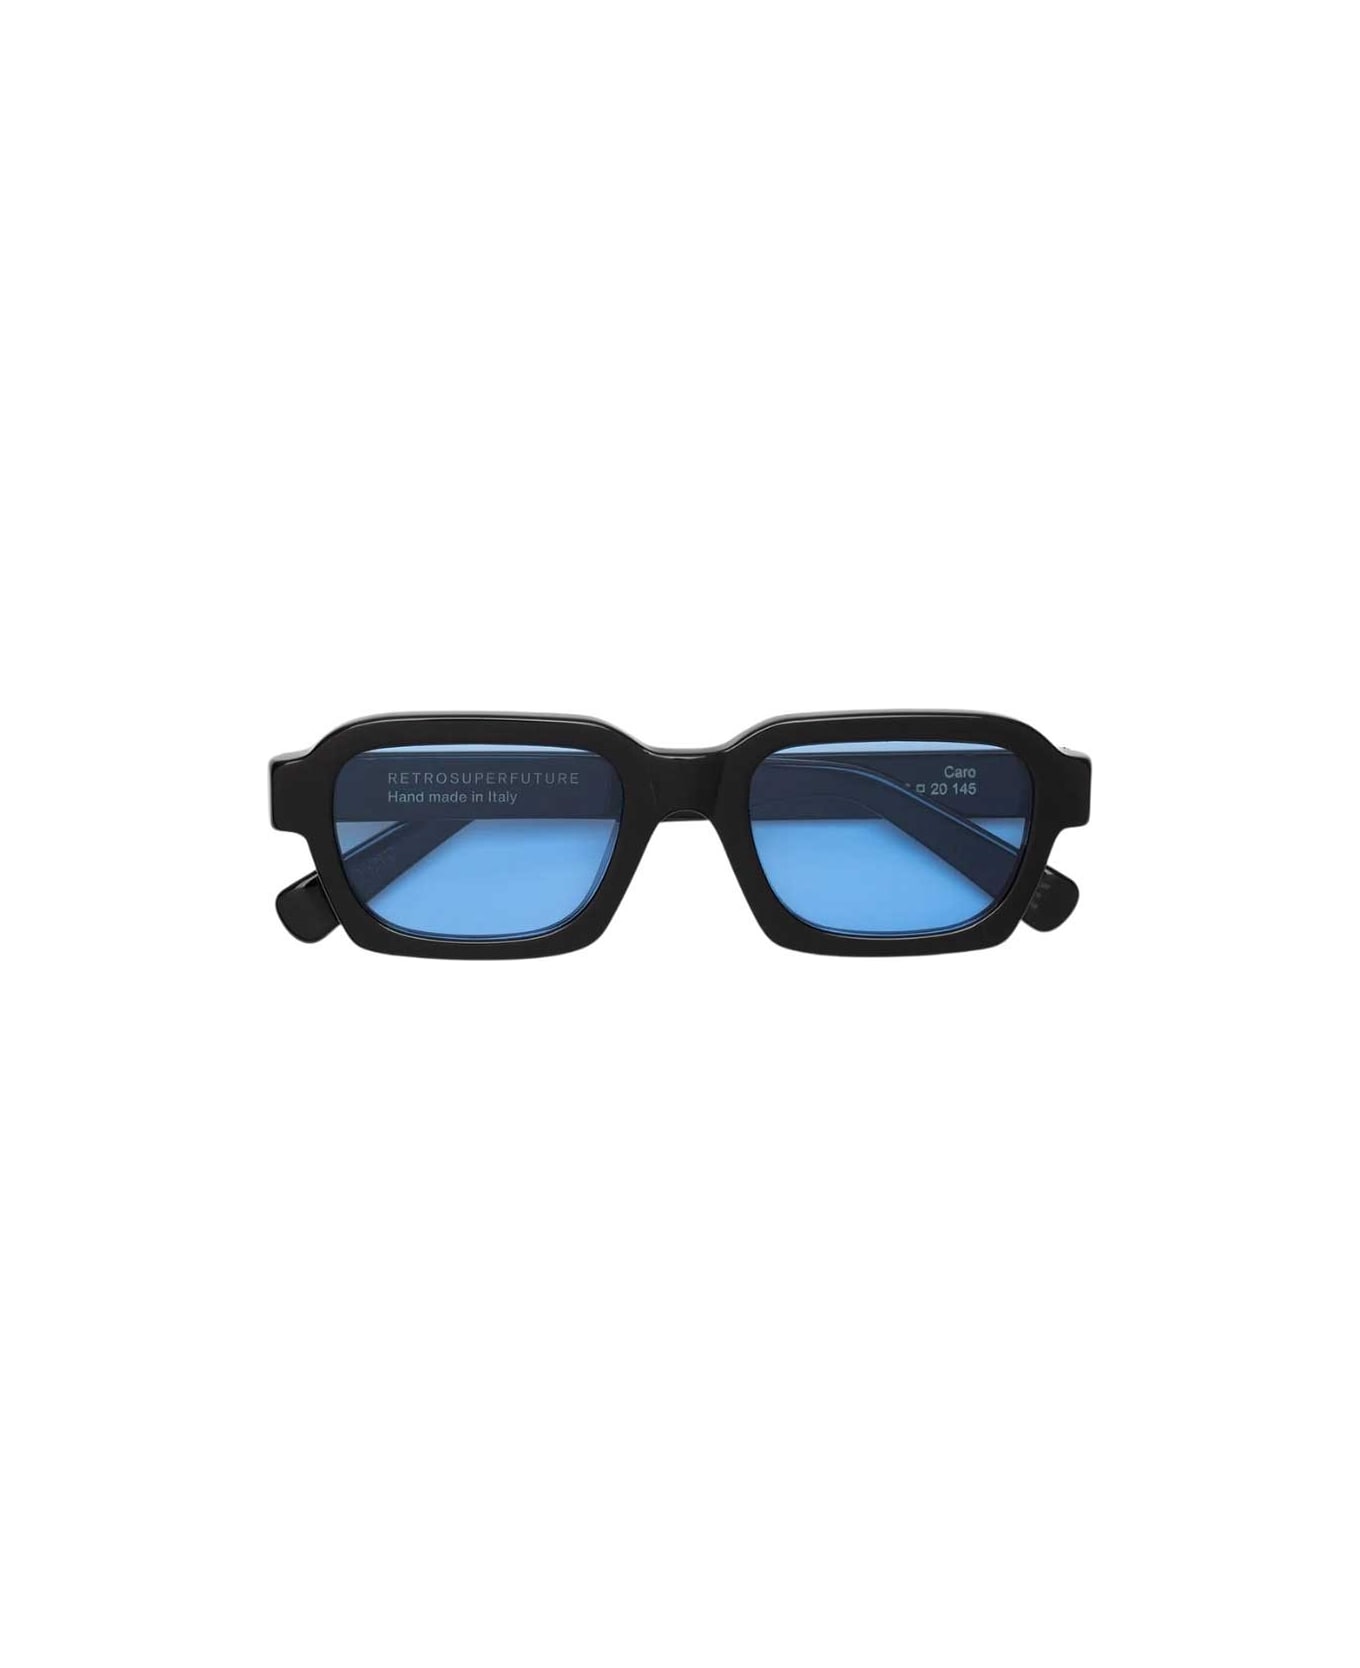 RETROSUPERFUTURE Eyewear - Nero/Blu アイウェア